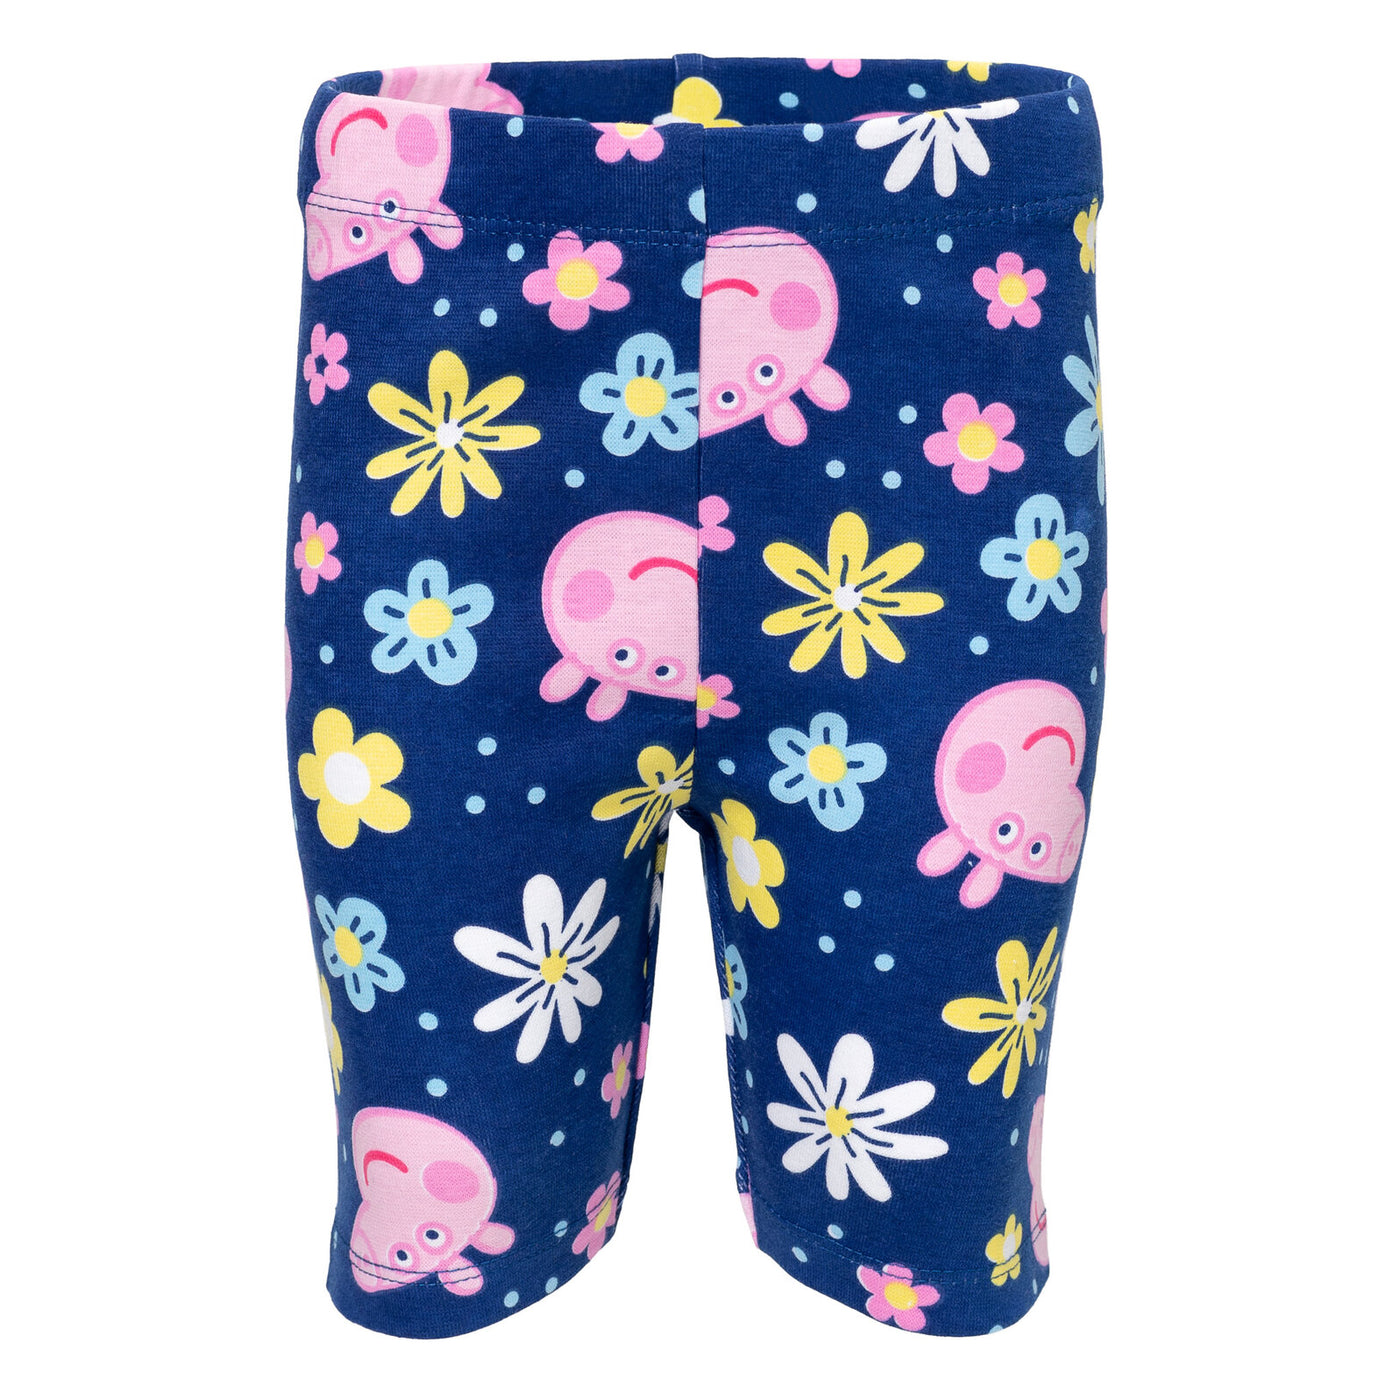 Peppa Pig Peplum camiseta gráfica y pantalones cortos